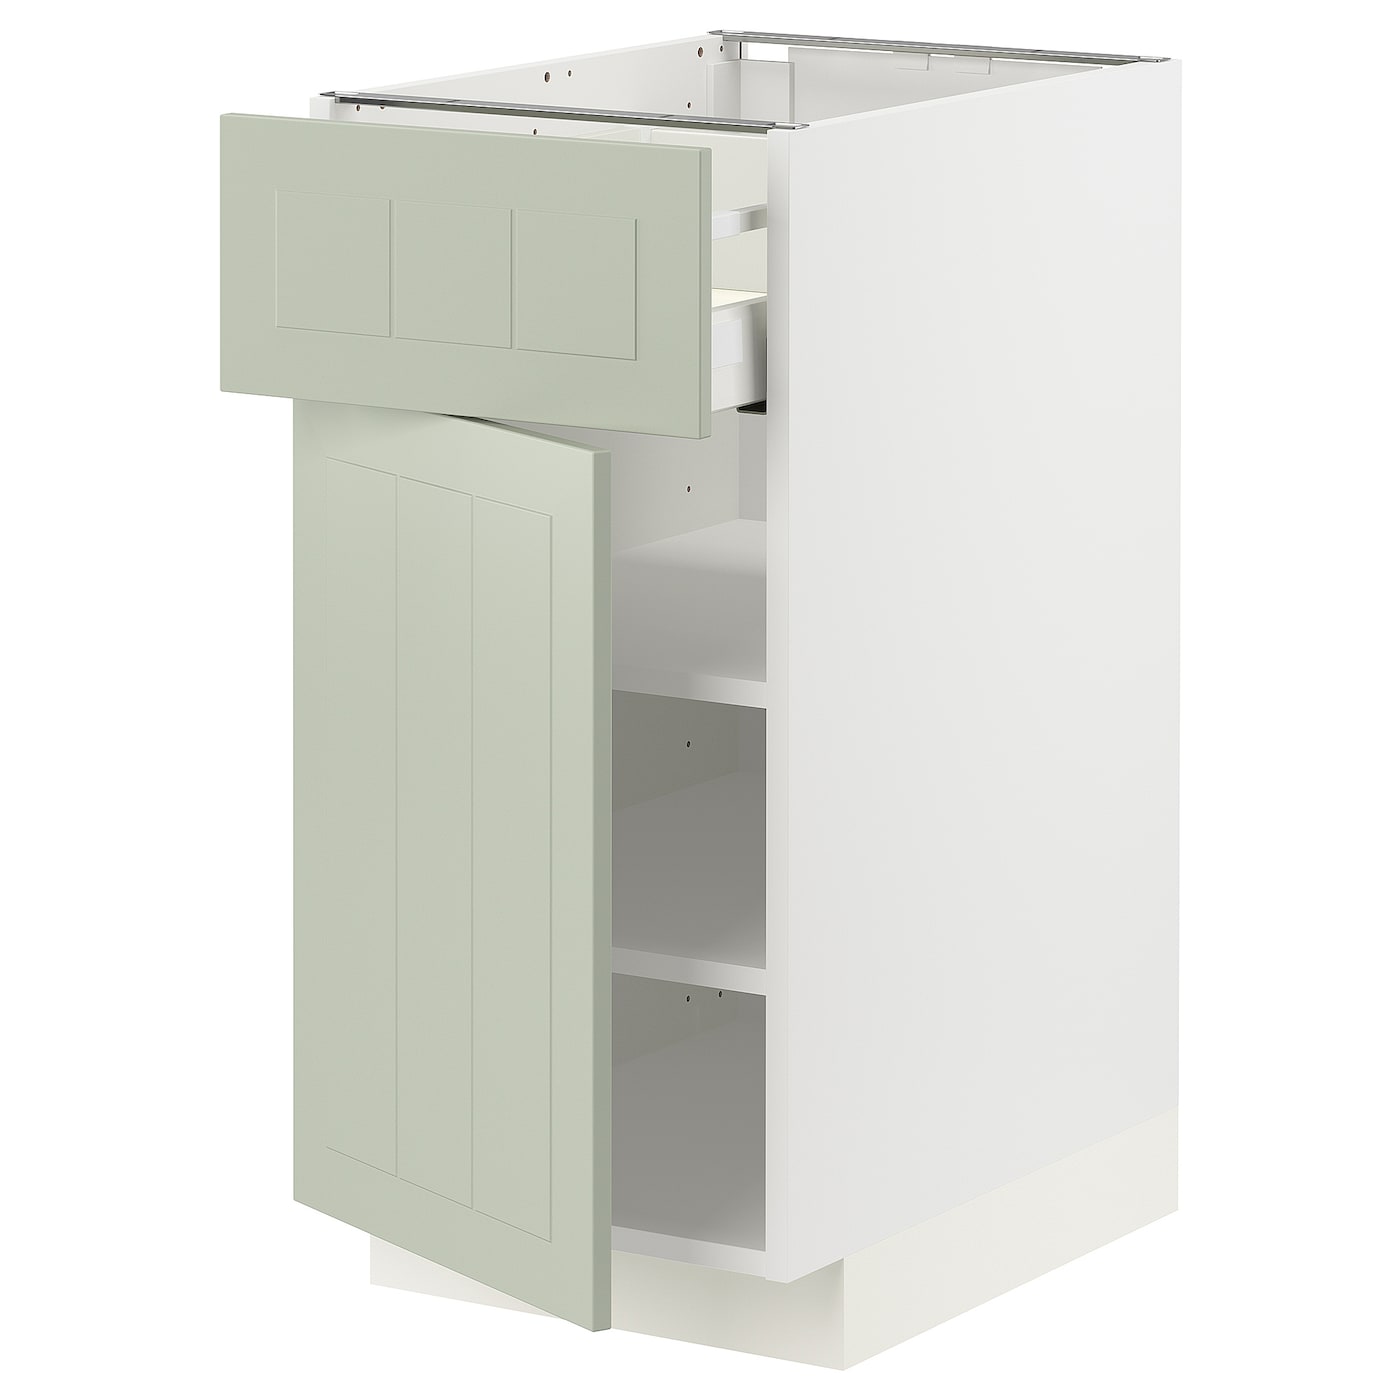 Напольный кухонный шкаф  - IKEA METOD MAXIMERA, 88x62x40см, белый/светло-зеленый, МЕТОД МАКСИМЕРА ИКЕА